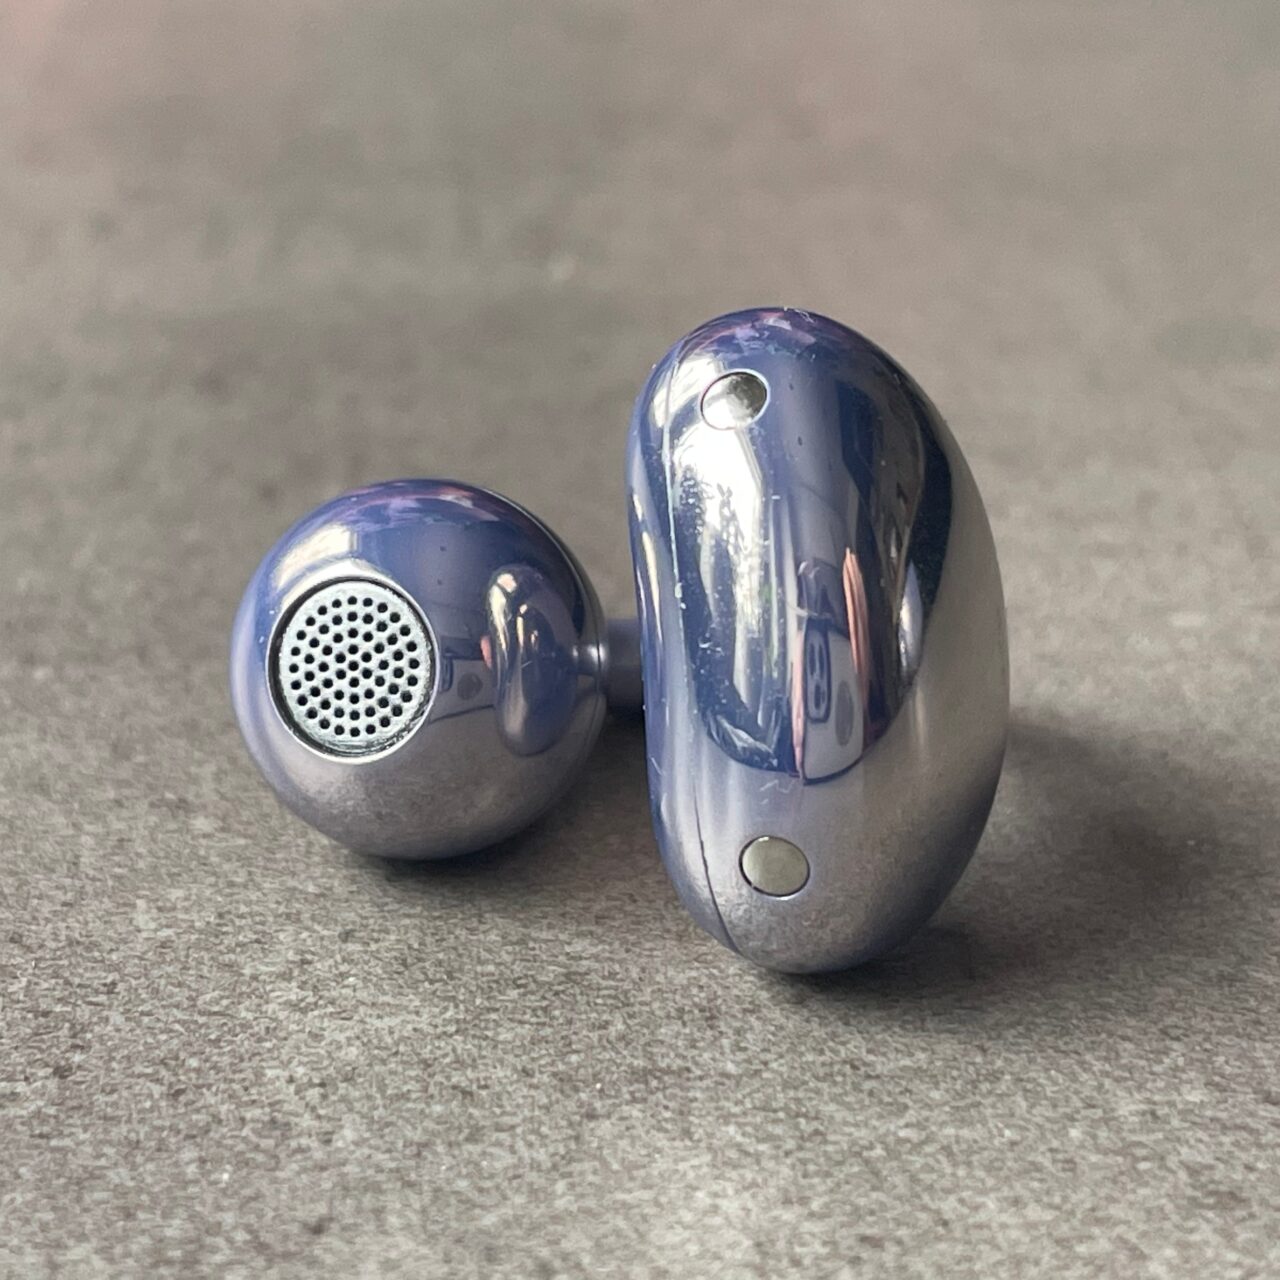 Srebrne bezprzewodowe słuchawki douszne Huawei FreeClip z elastycznym hakiem do umocowania na uchu.